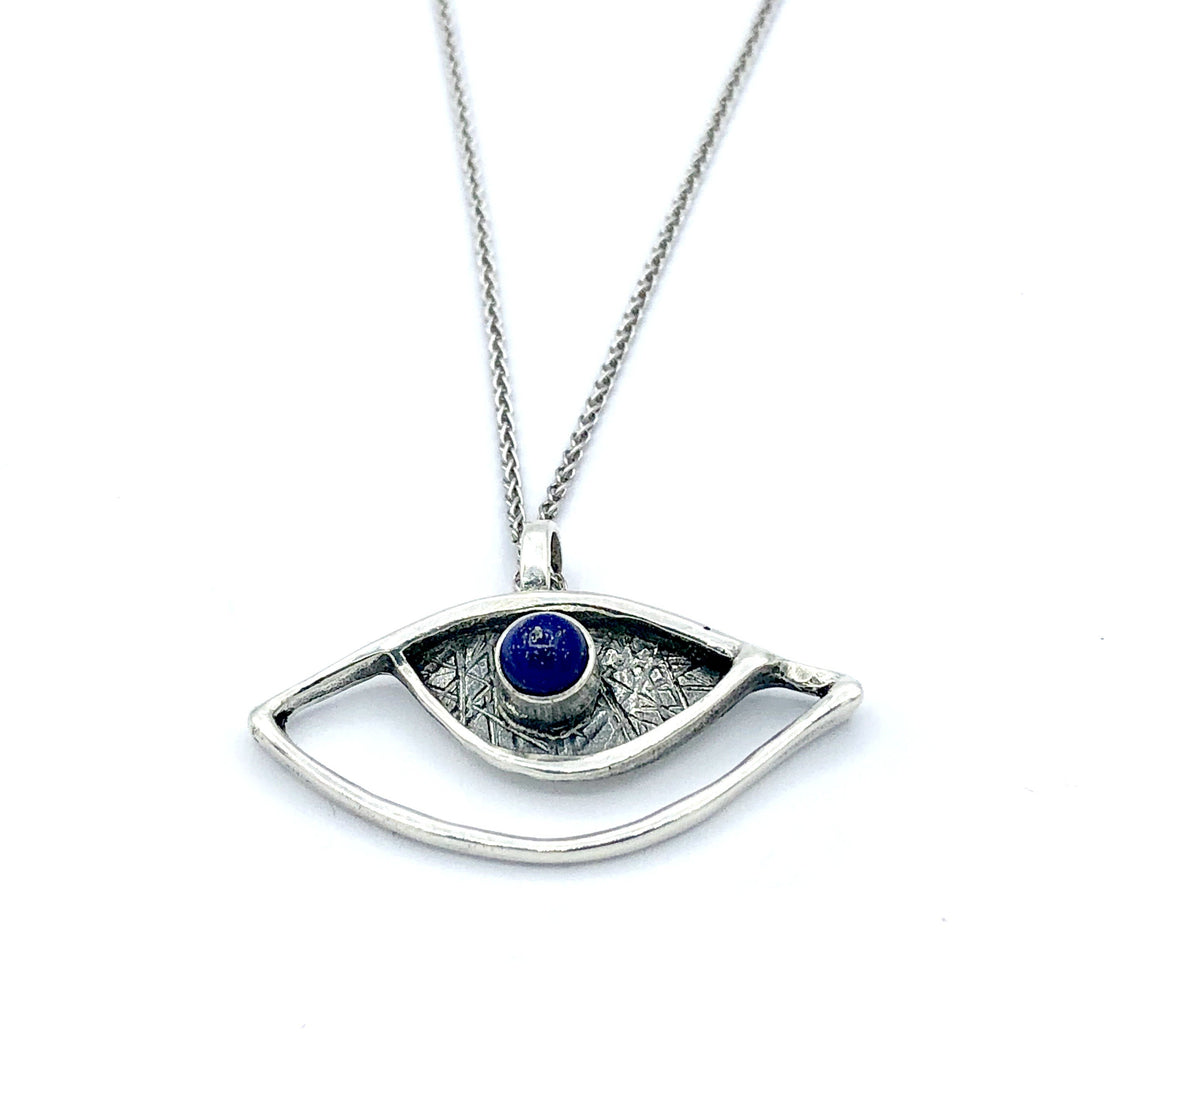 evil eye pendant, blue lapis pendant, silver eye pendant silver chain 